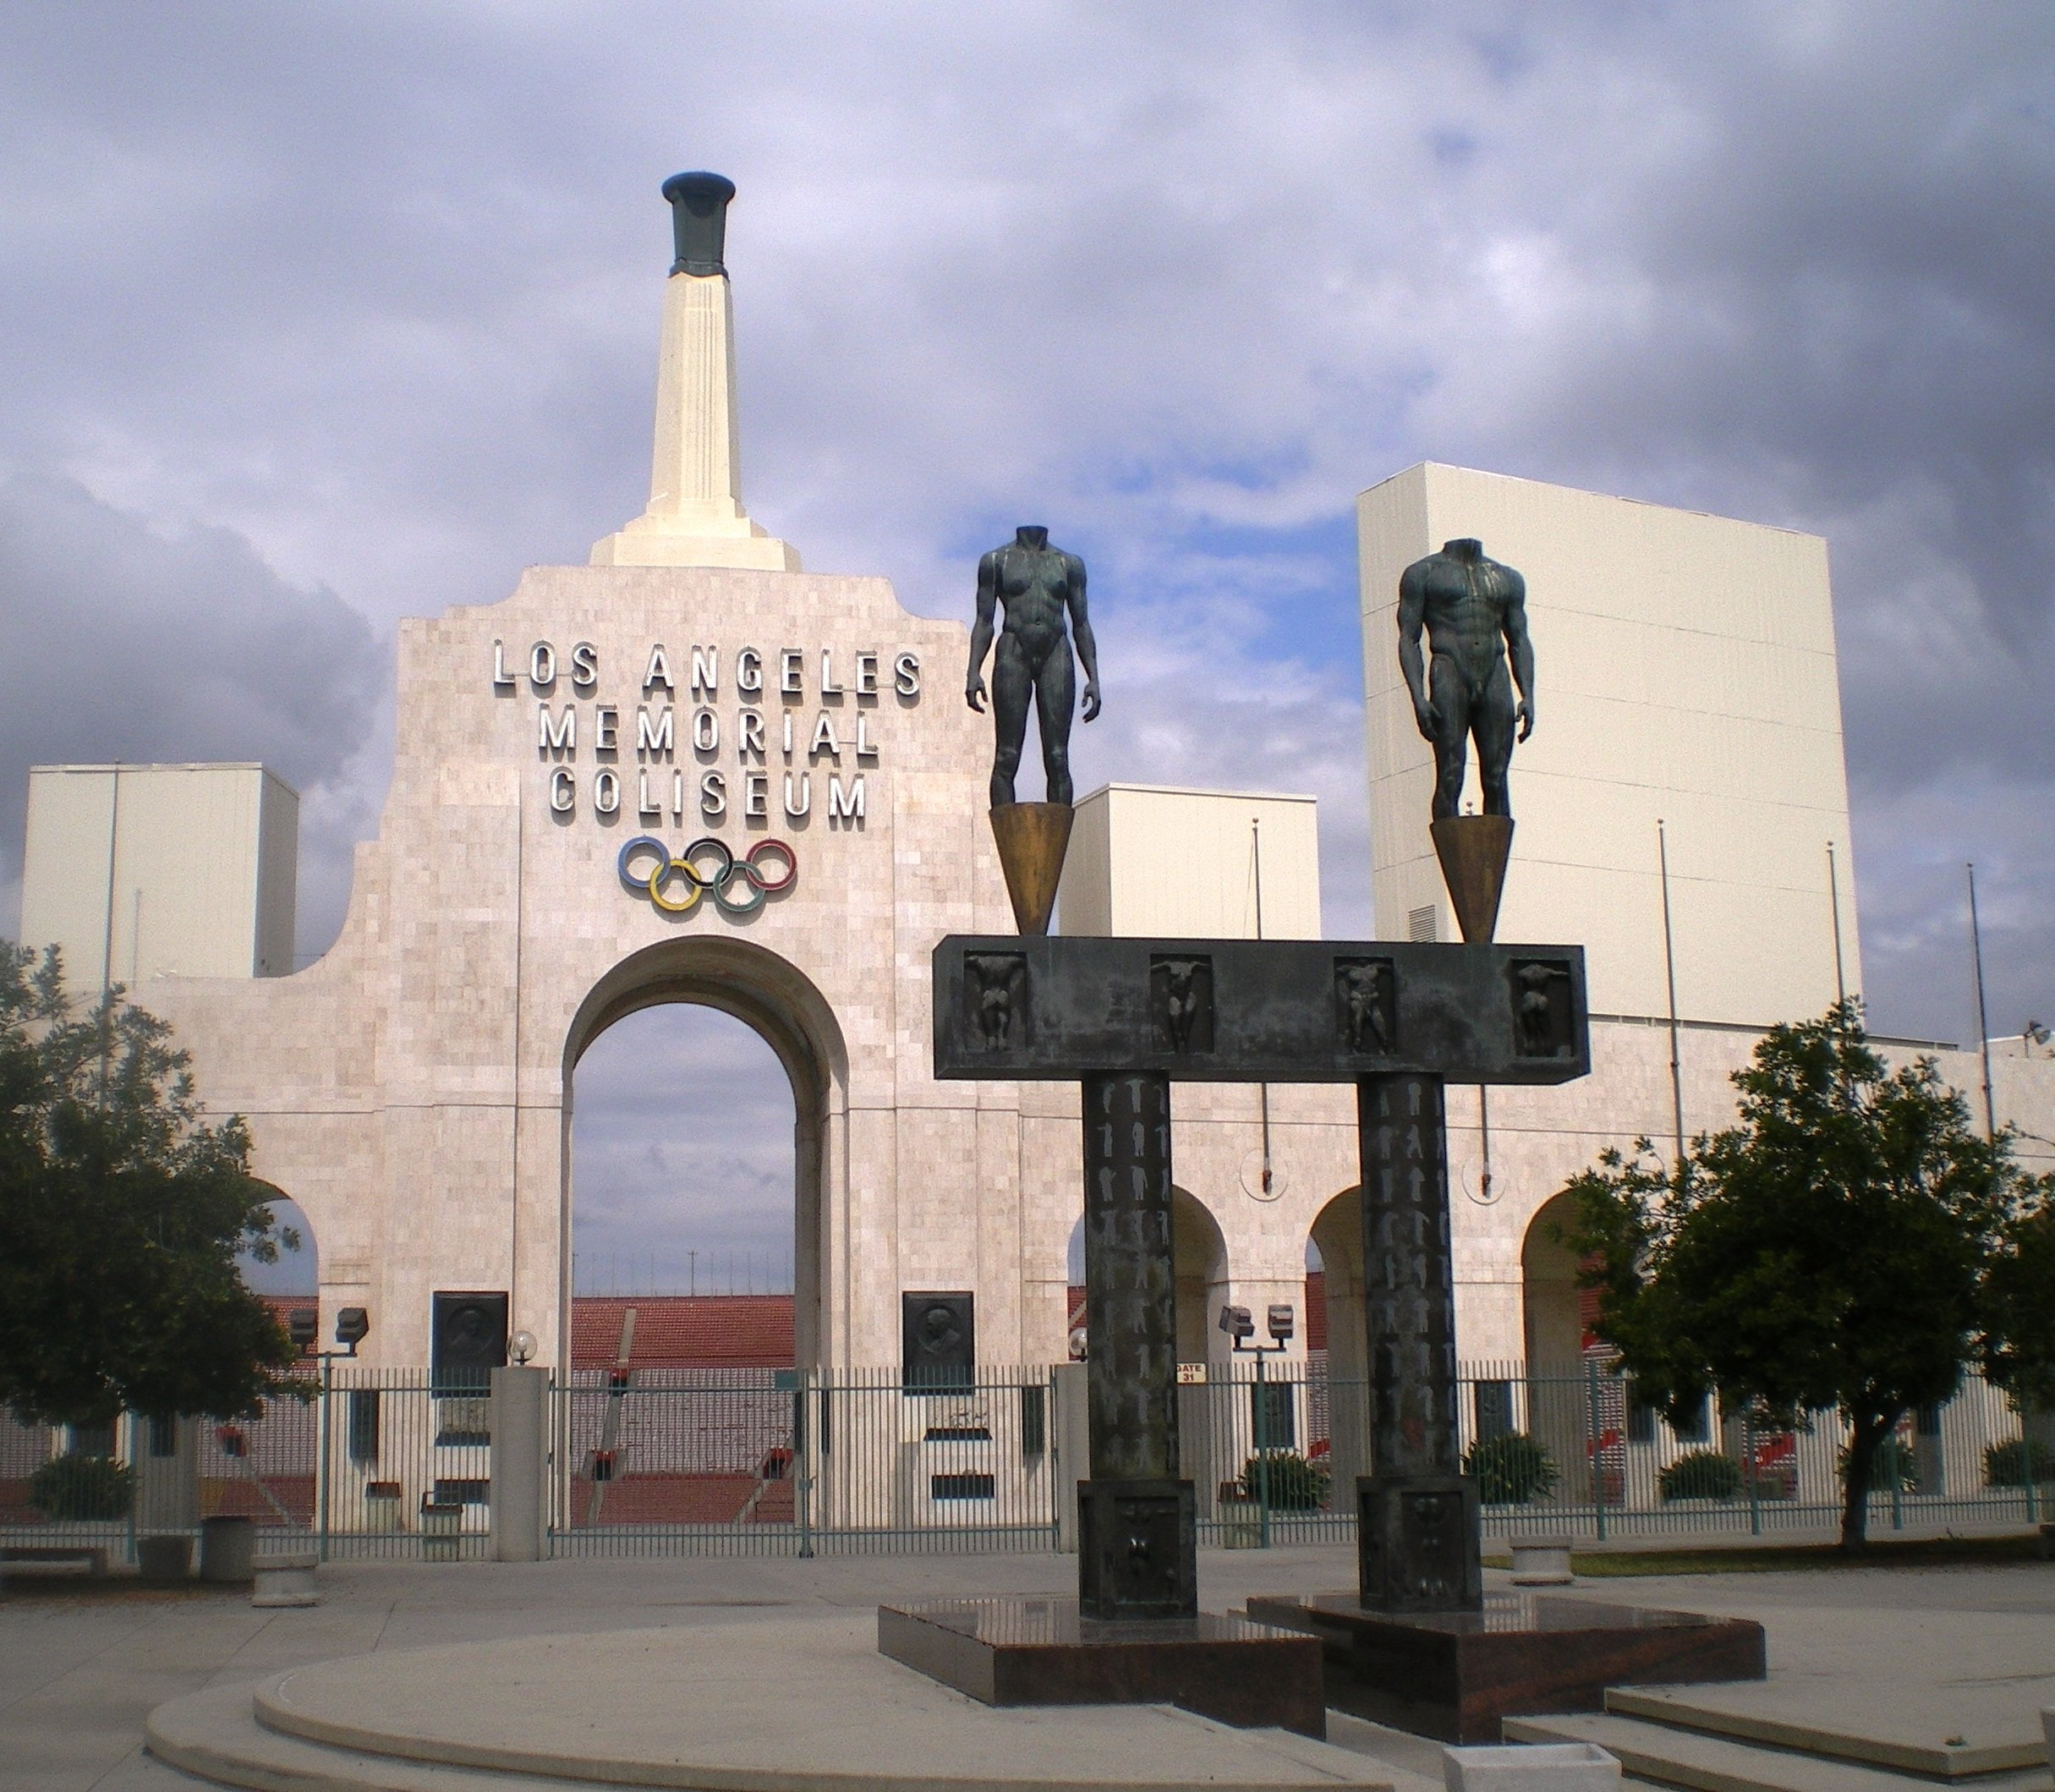 1. The Figueroa Corridor: Los Angeles Memorial Coliseum